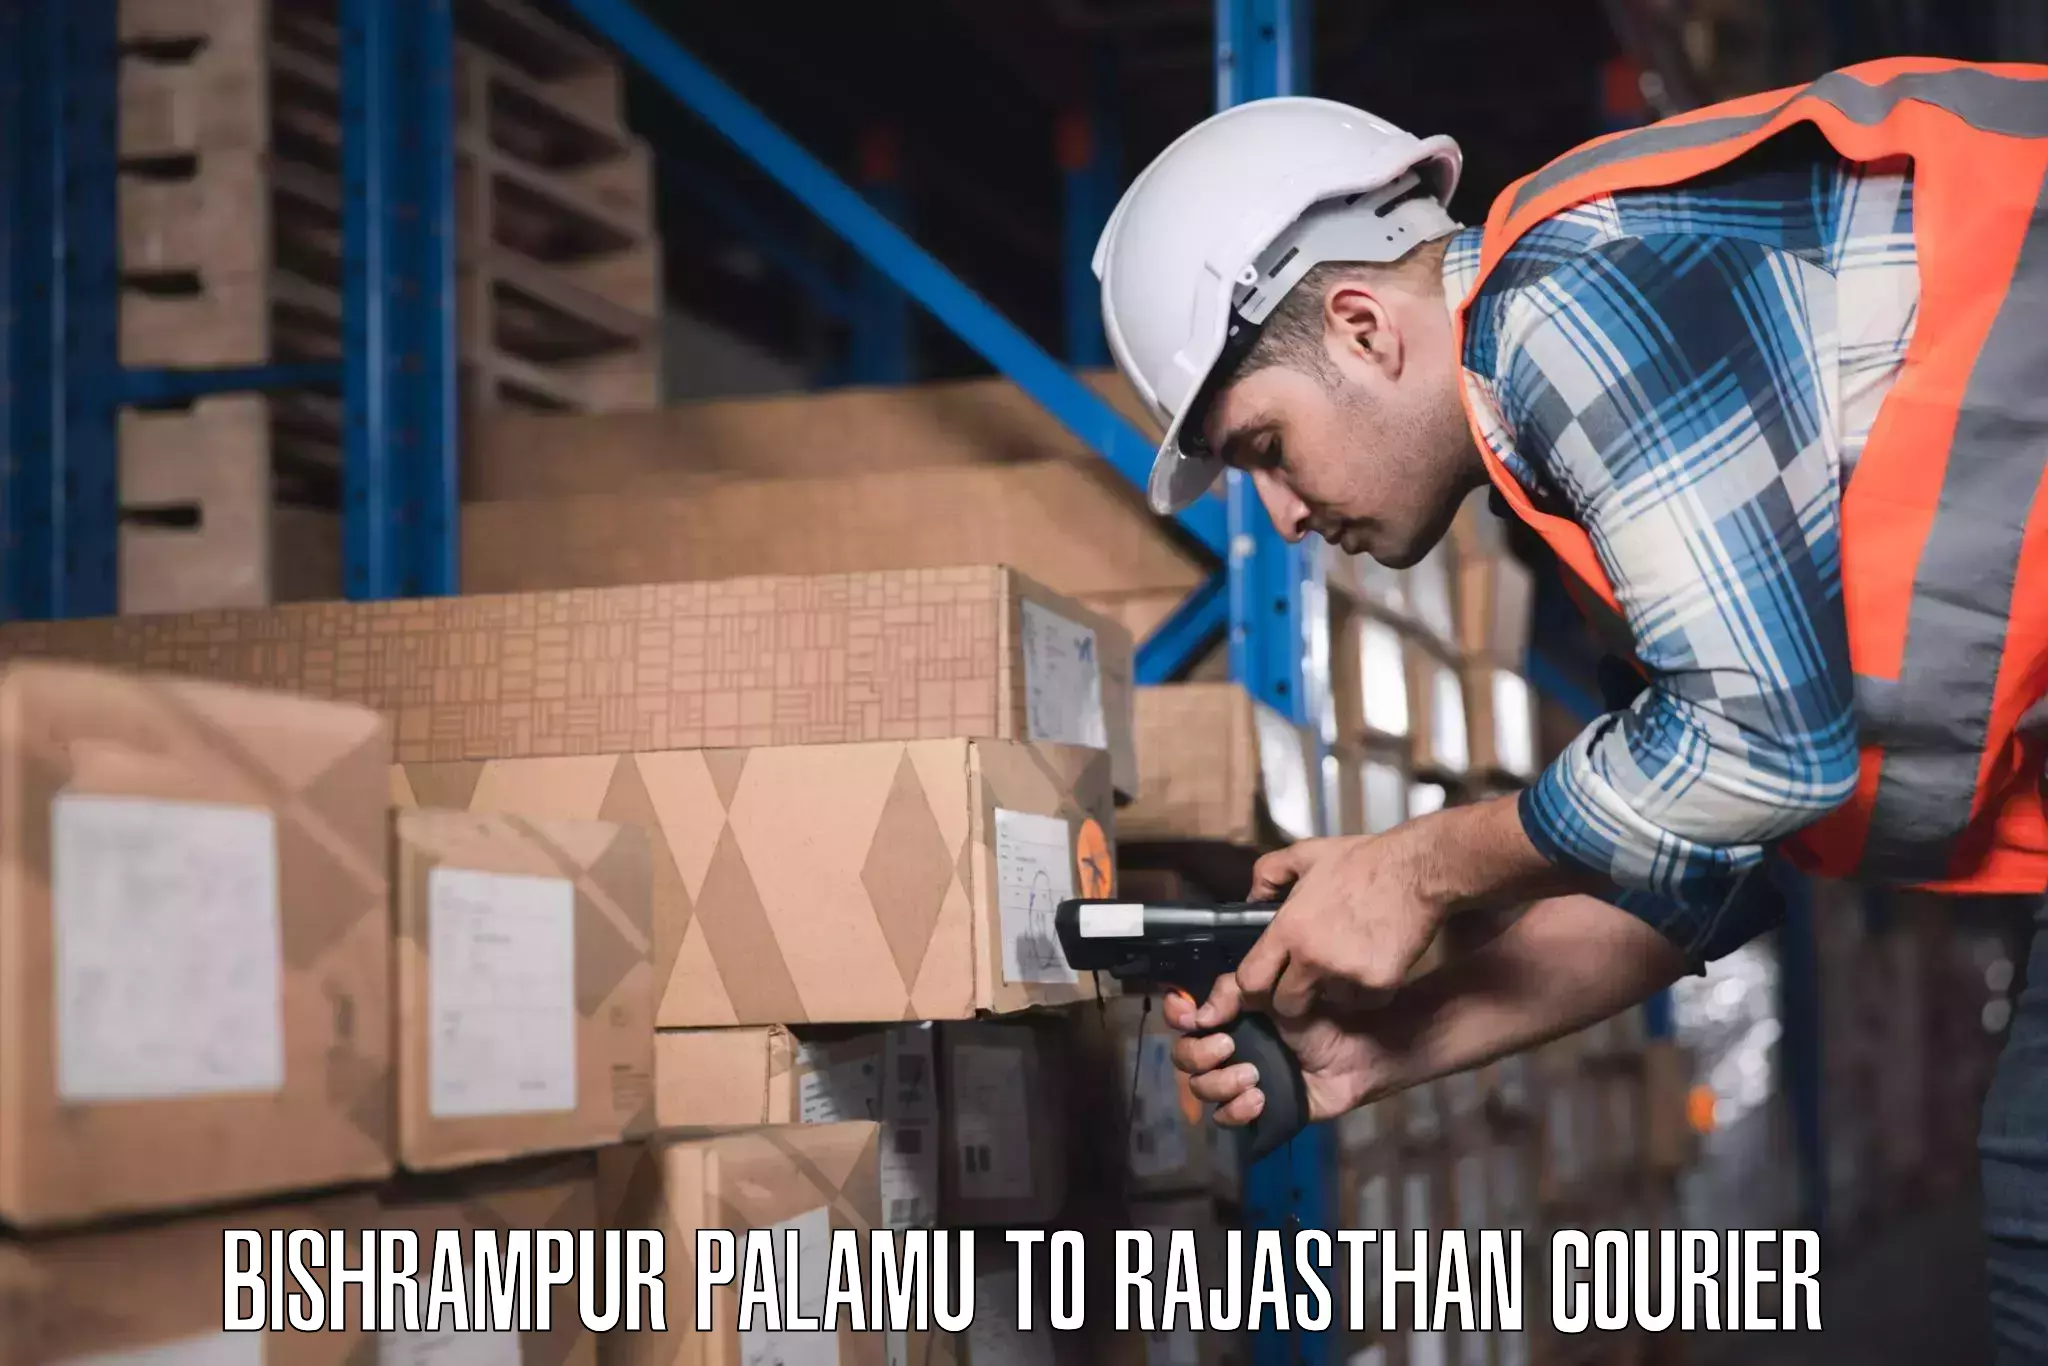 Baggage shipping service Bishrampur Palamu to Itawa